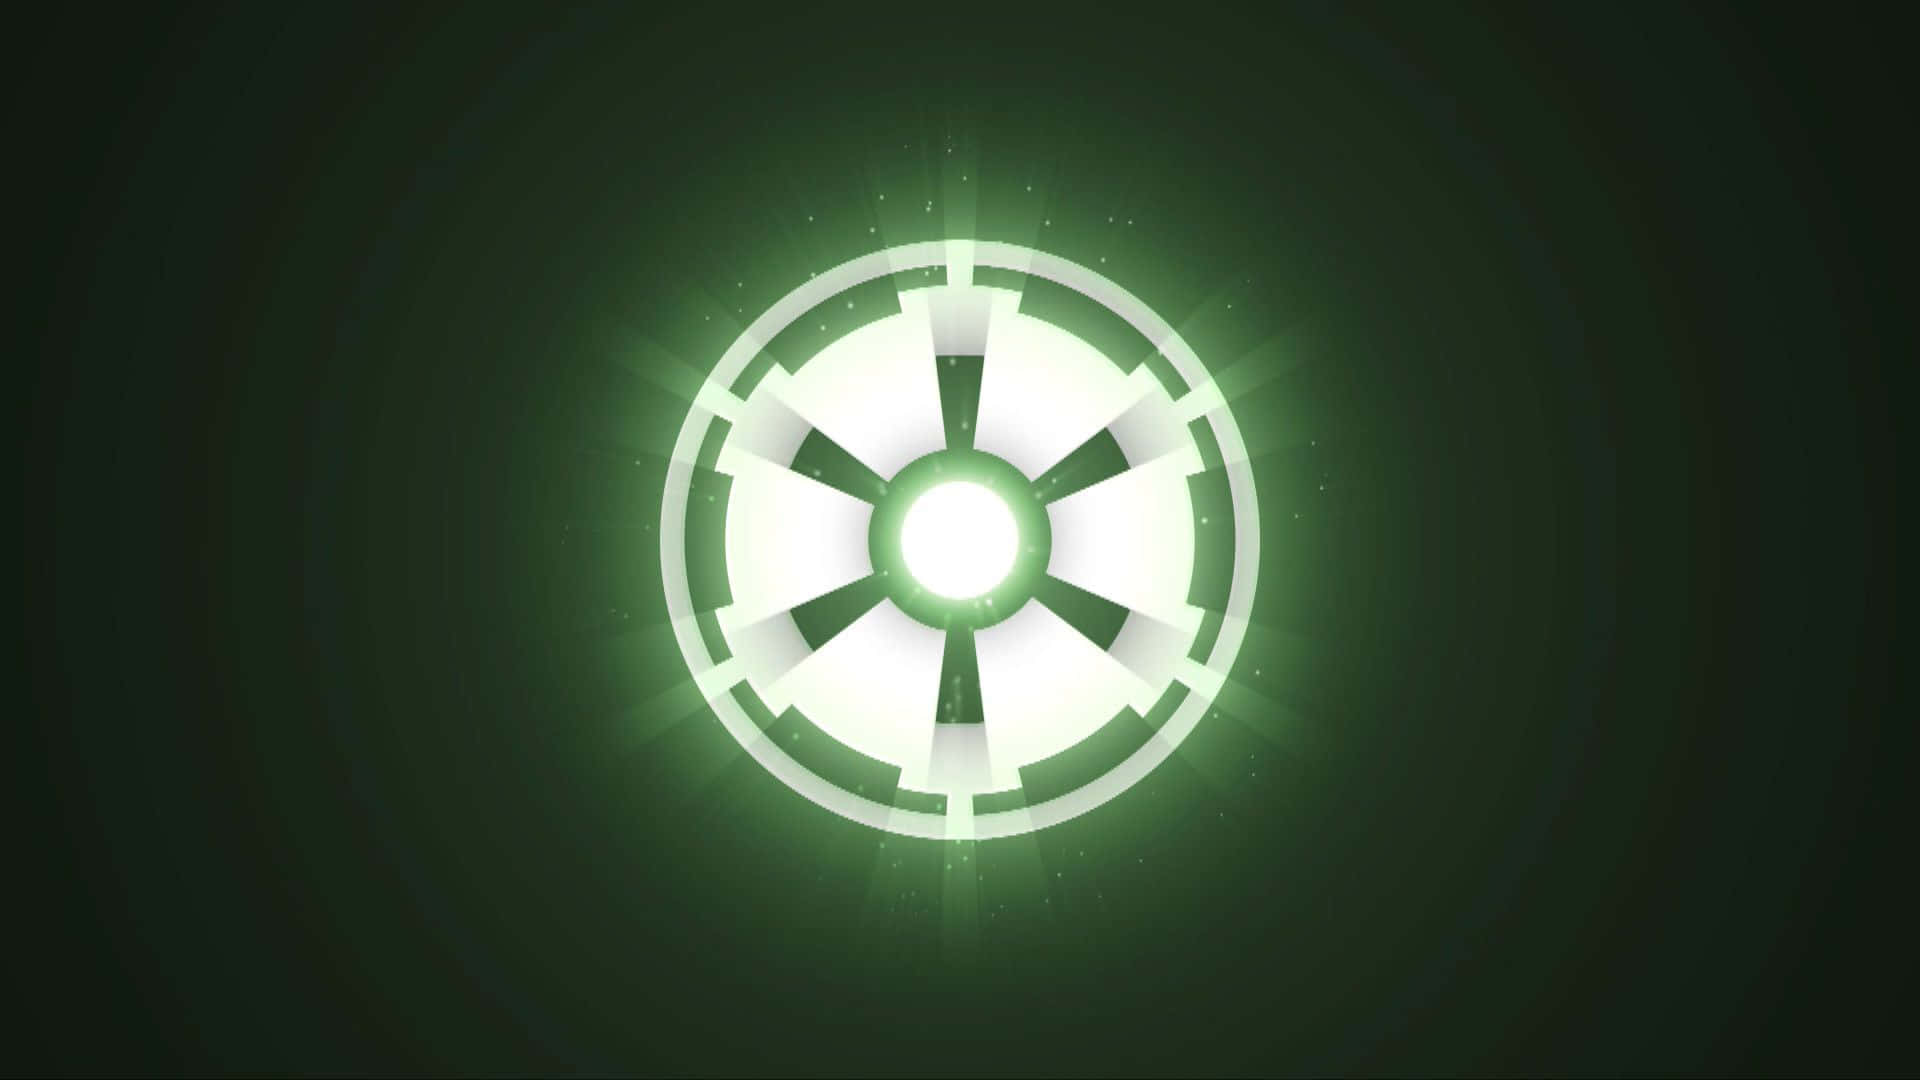 Det Empire's ikoniske logo fra Star Wars-filmene Wallpaper